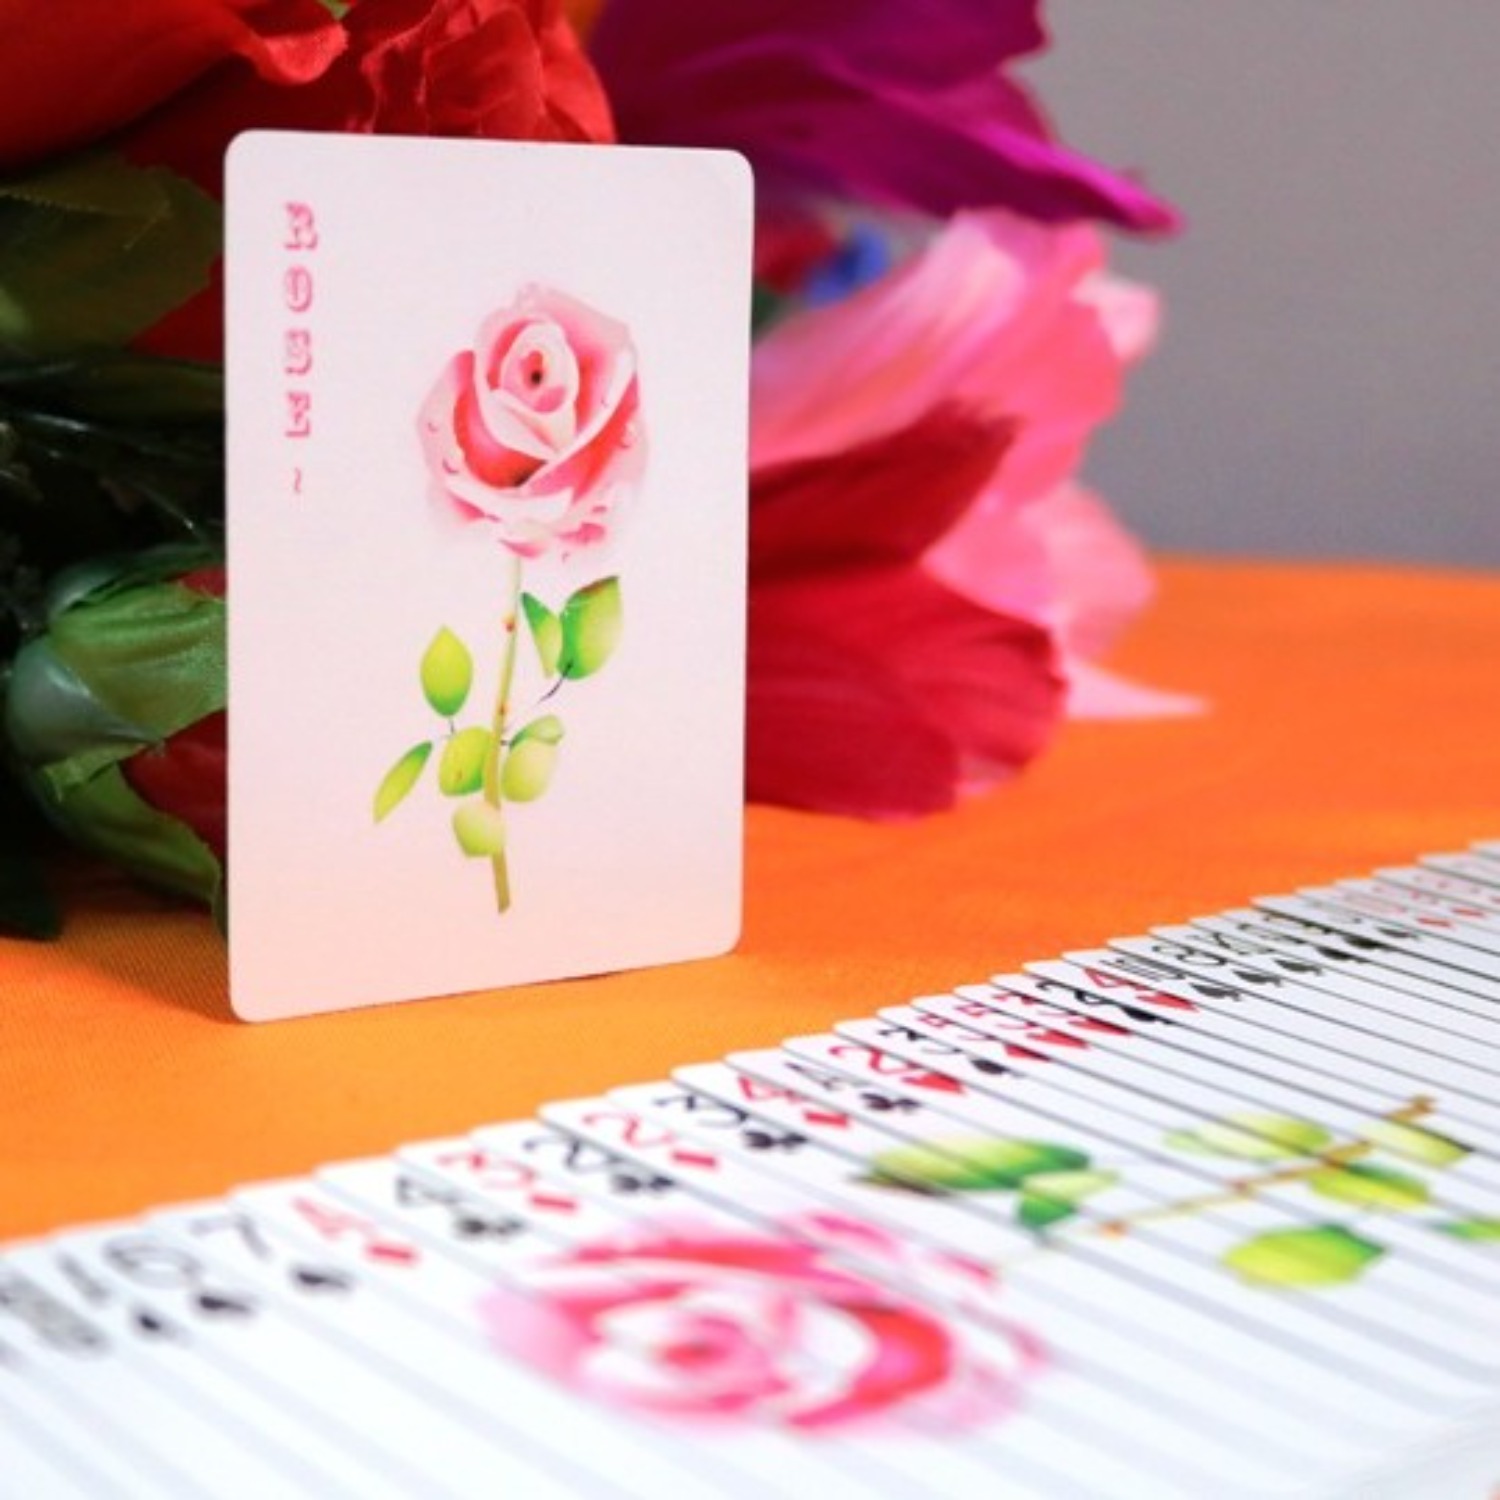 [로즈프롬 어 카드] 아름다운 장미를 선사하십시오.partyn